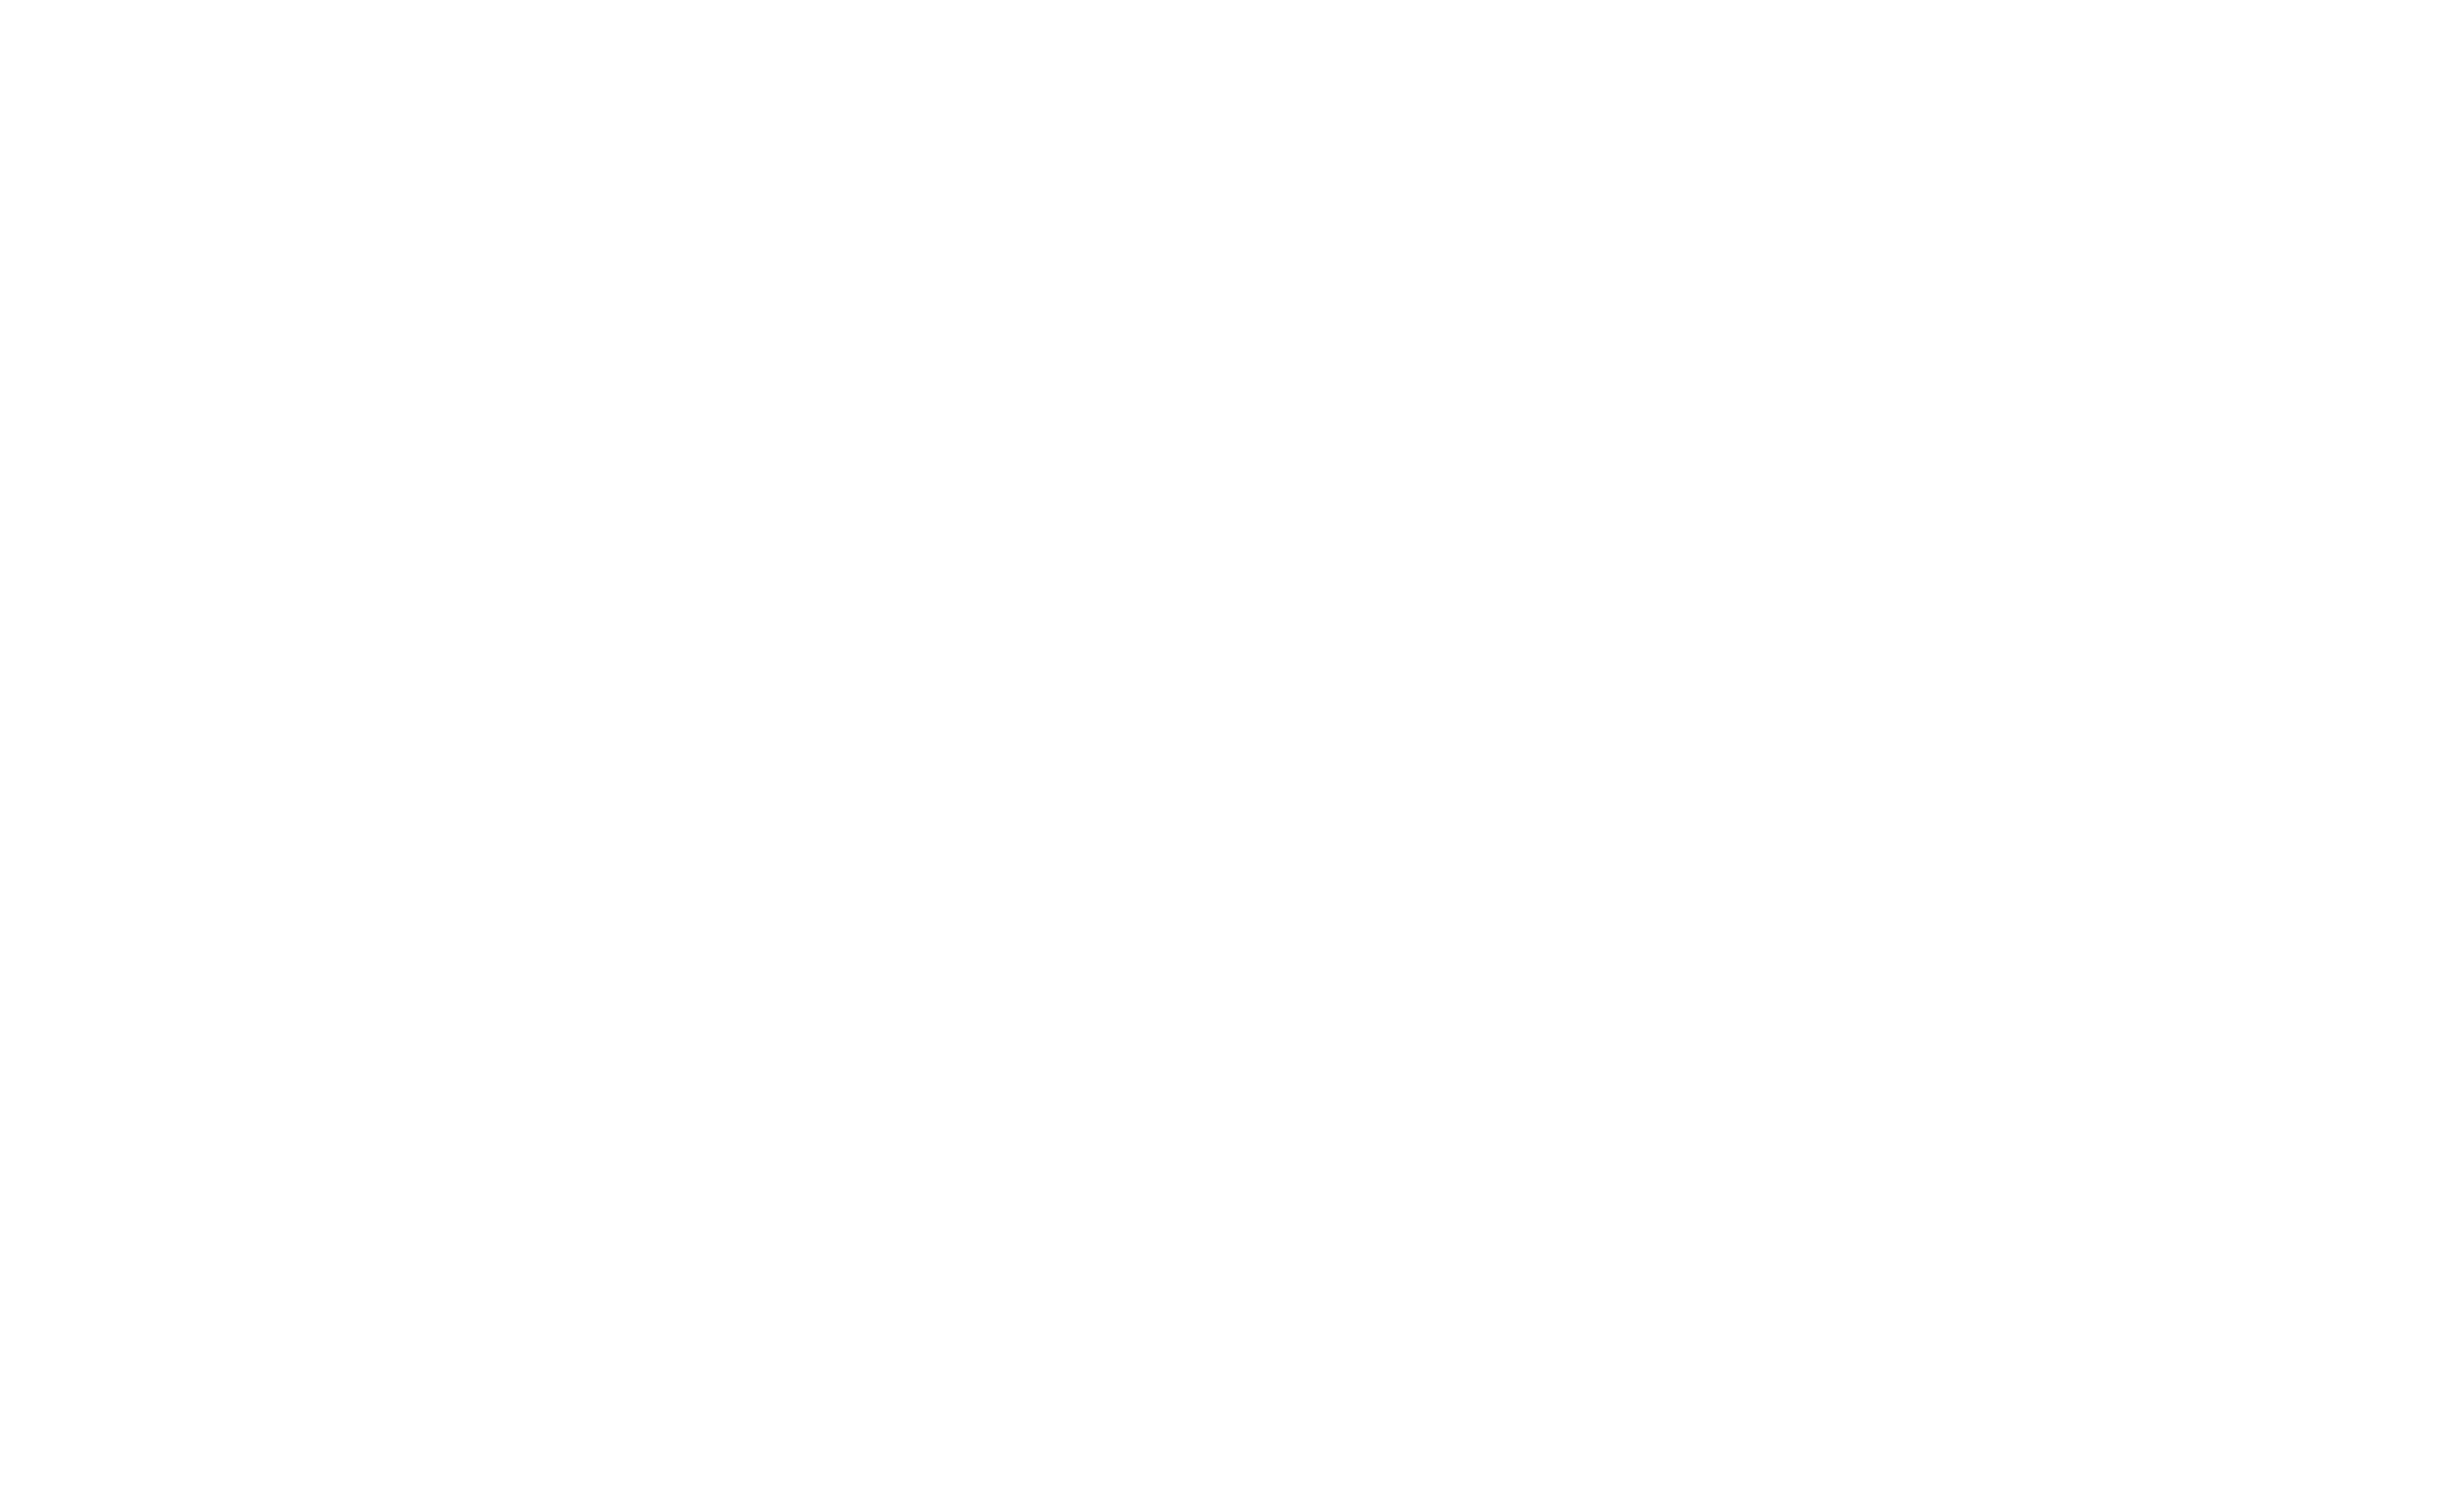 NSI-Online-Short-Film-Festival-laurels-white.png